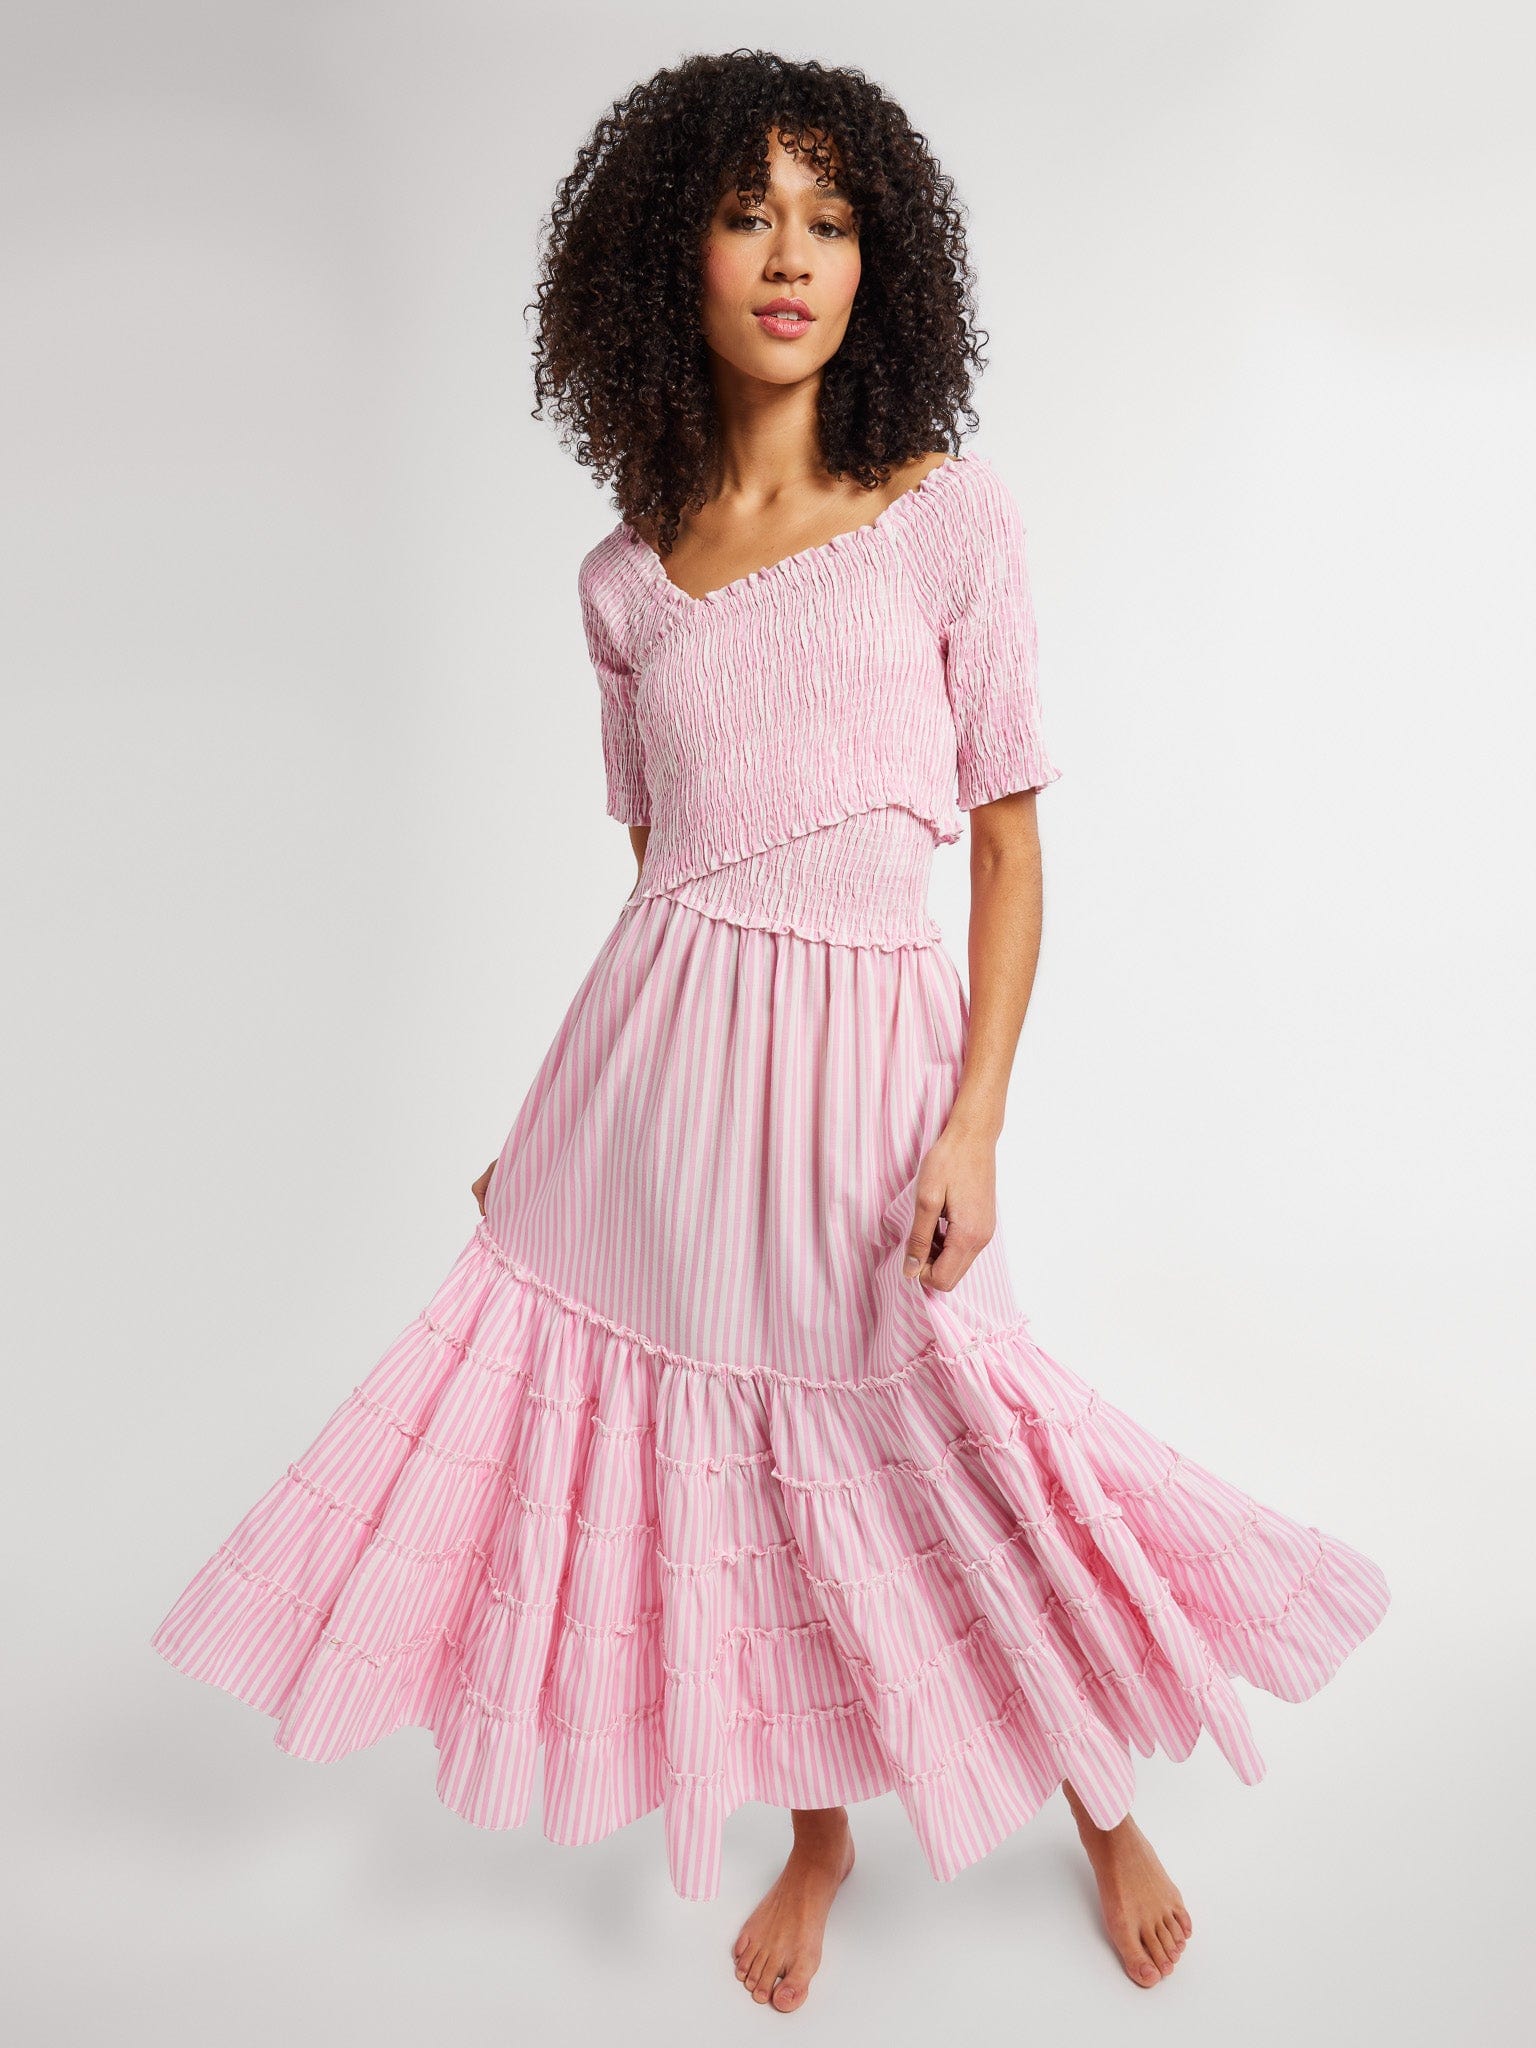 MILLE Clothing Celia Dress in Bubblegum Stripe